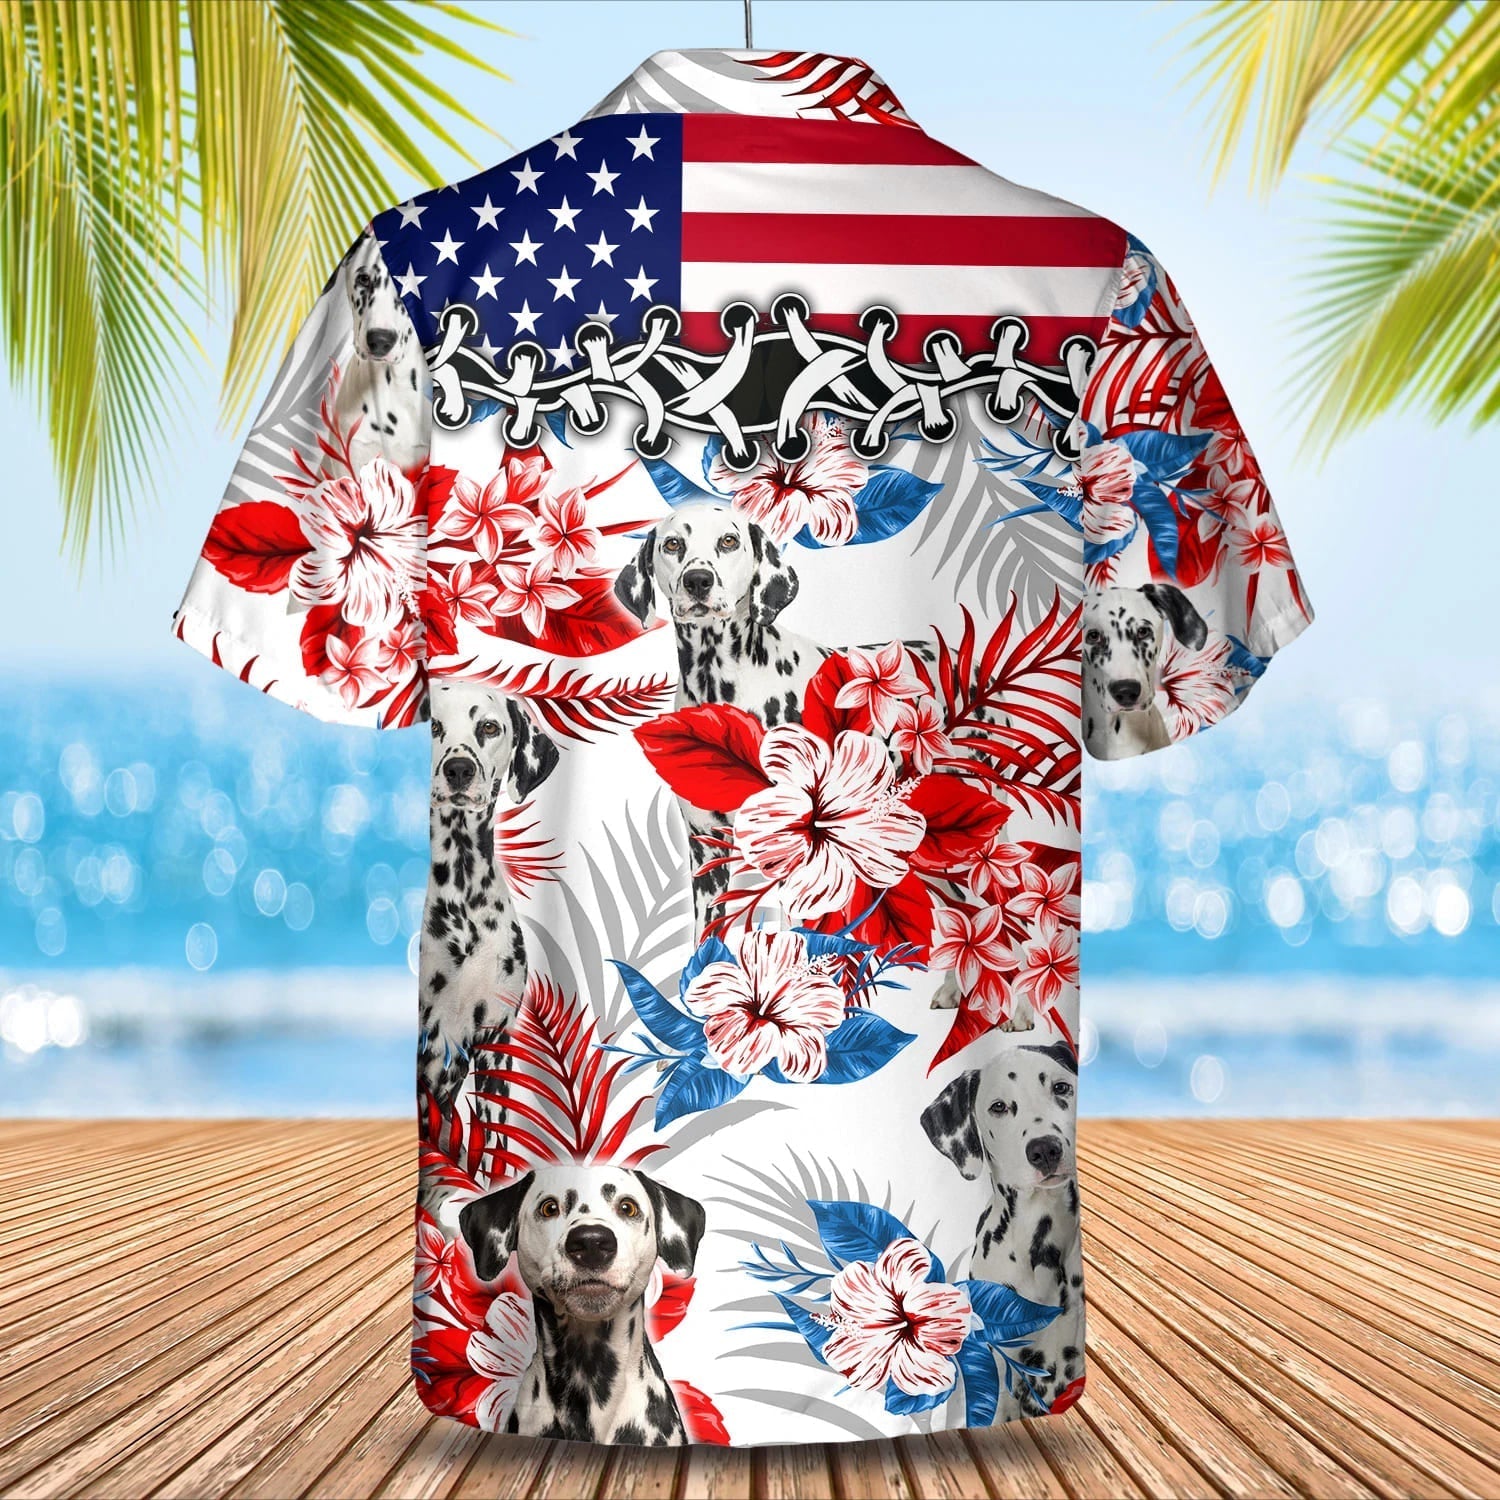 Dalmatian Hawaiian Shirt/ Summer aloha shirt/ Men Hawaiian shirt/ Gift for summer